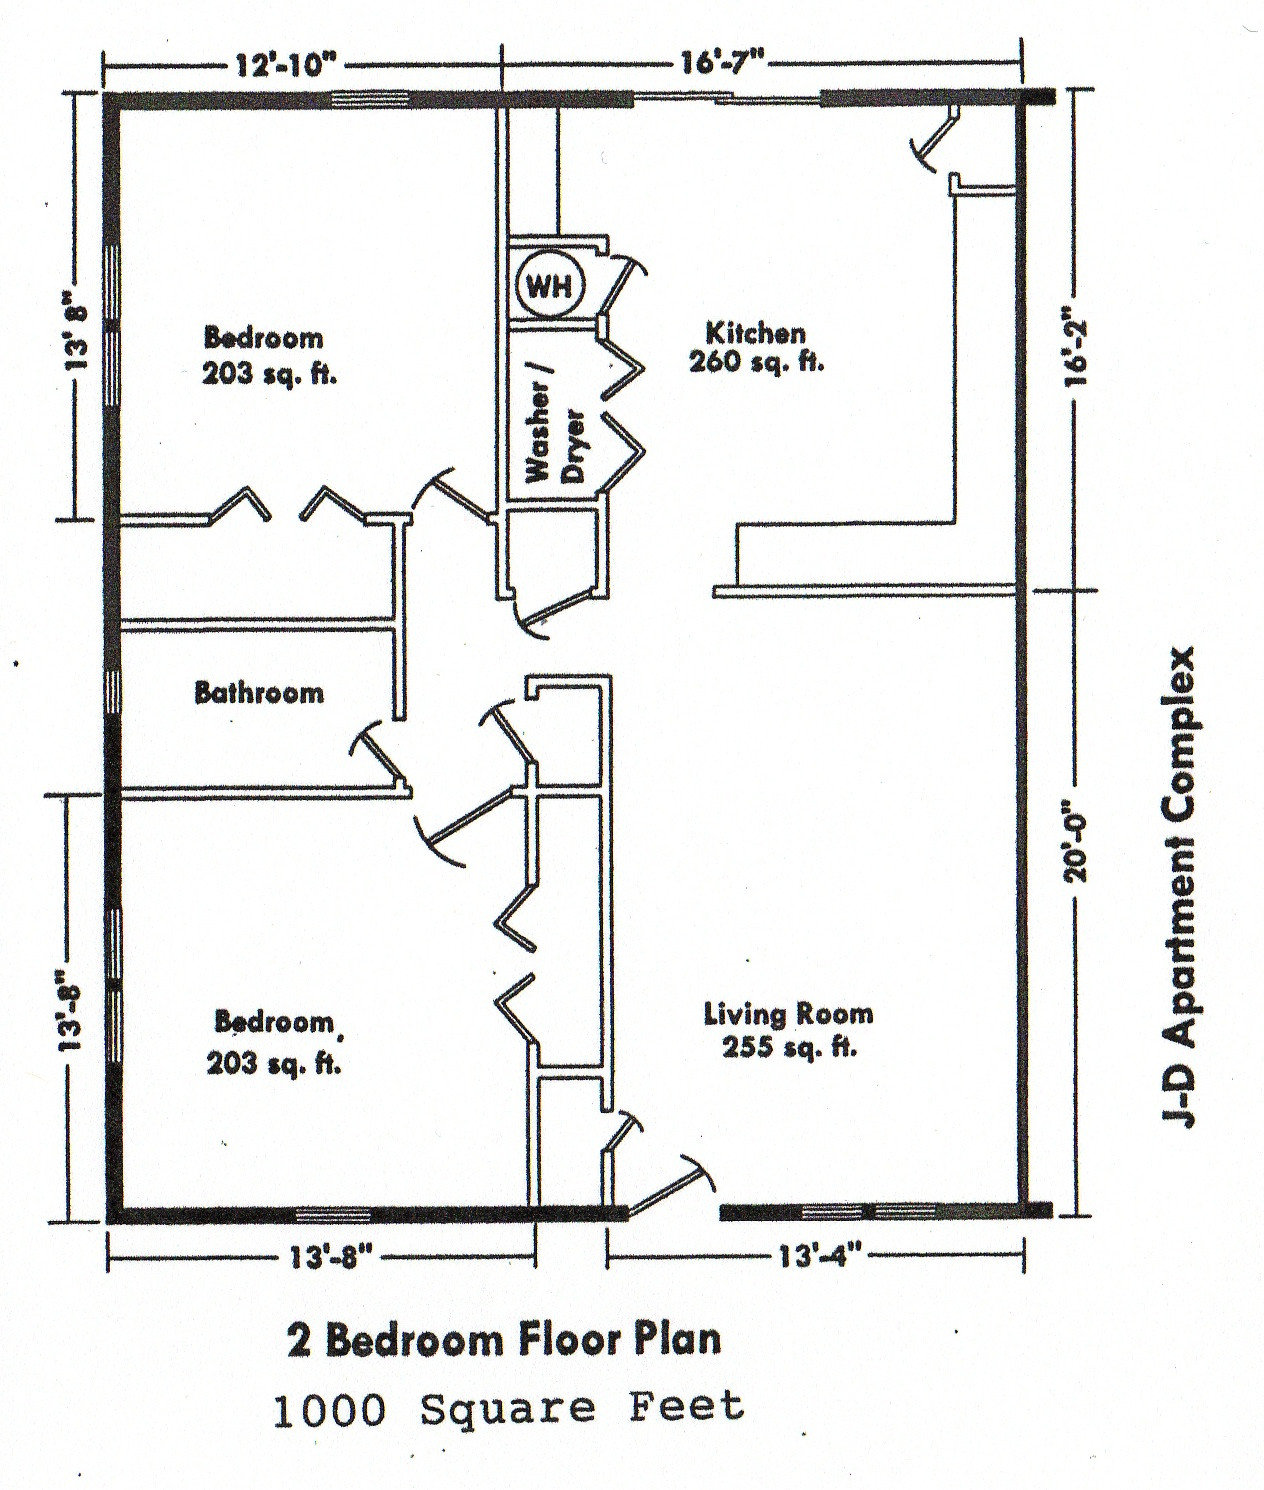 Best ideas about Bedroom Floor Plan
. Save or Pin BEDROOM FLOOR PLANS Now.